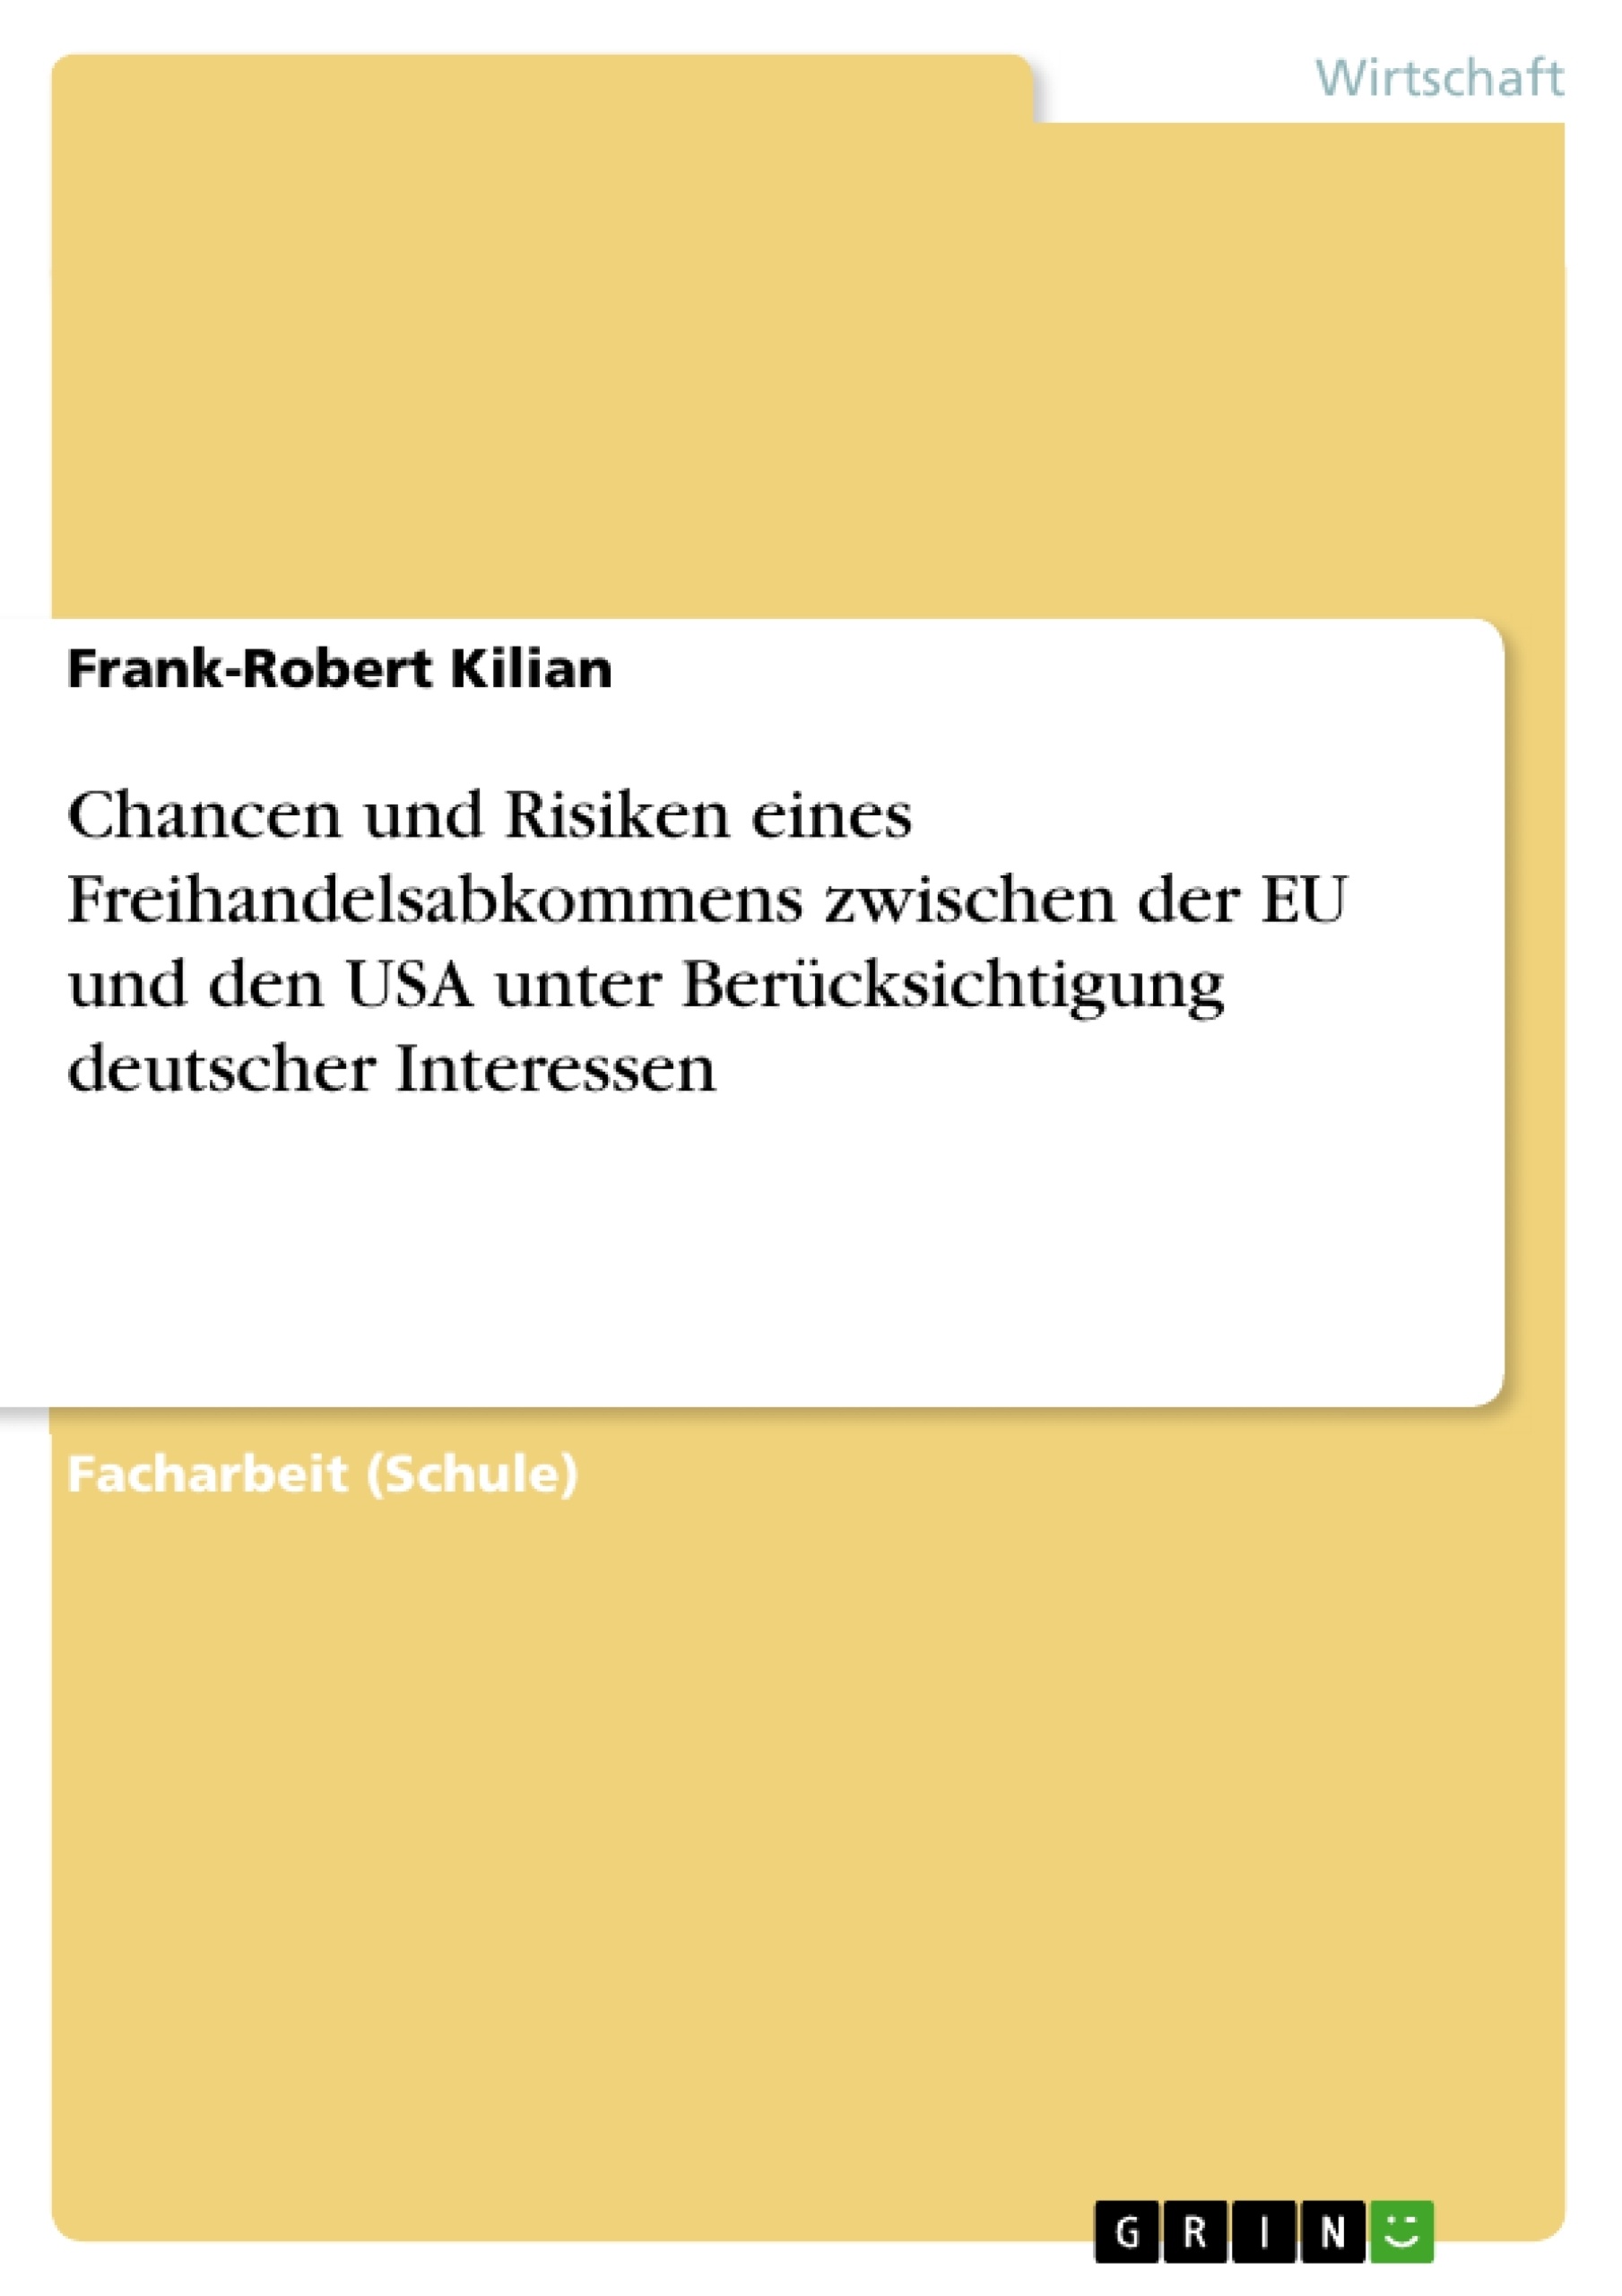 Titel: Chancen und Risiken eines Freihandelsabkommens zwischen der EU und den USA unter Berücksichtigung deutscher Interessen